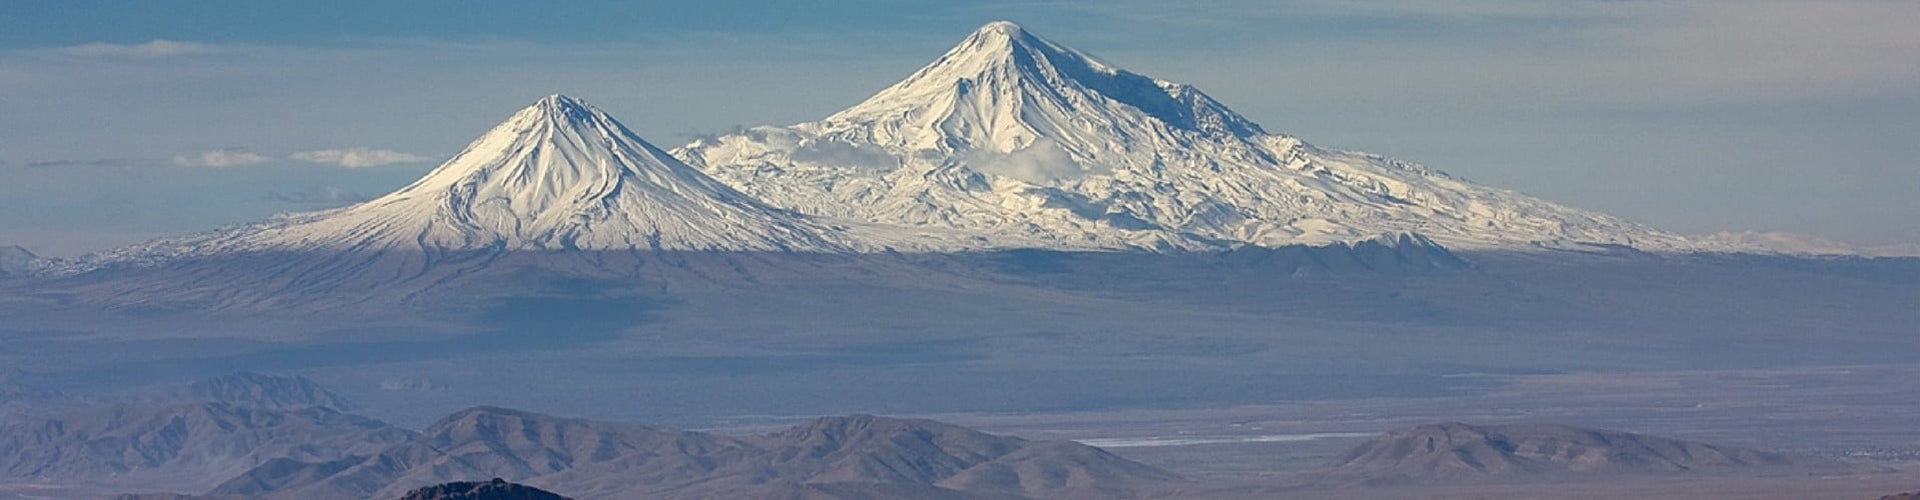 A mountainous view of Armenia